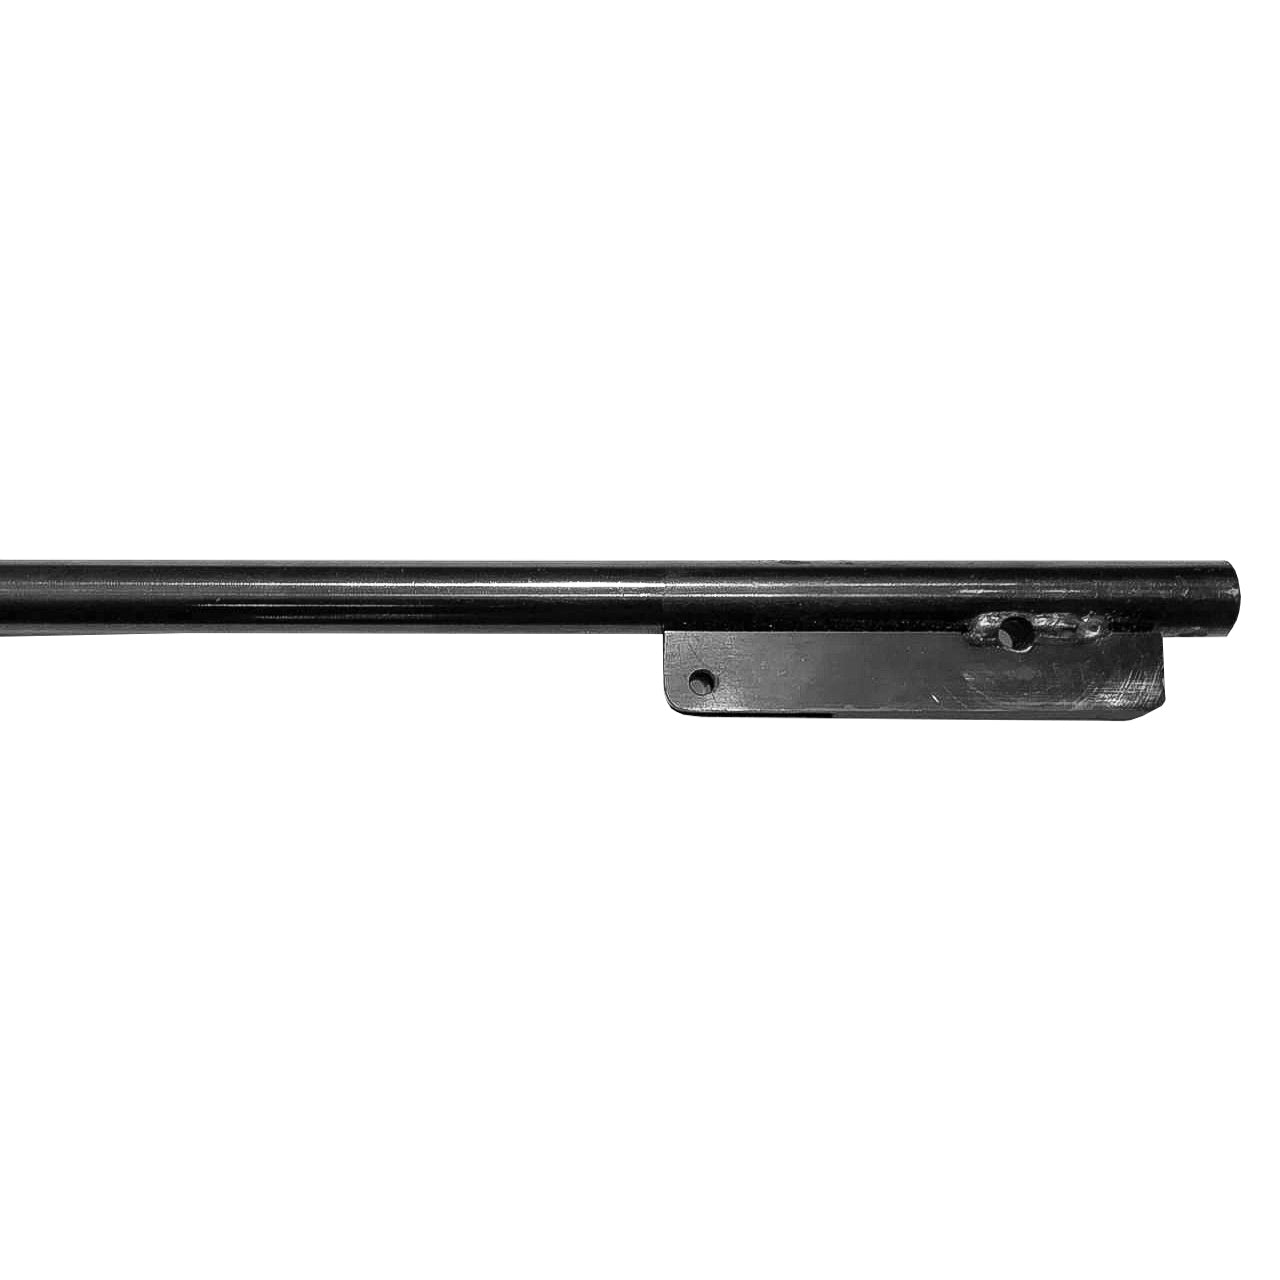 Cañón MENDOZA de repuesto compatible con Rifle RM-800 y similares Magnum